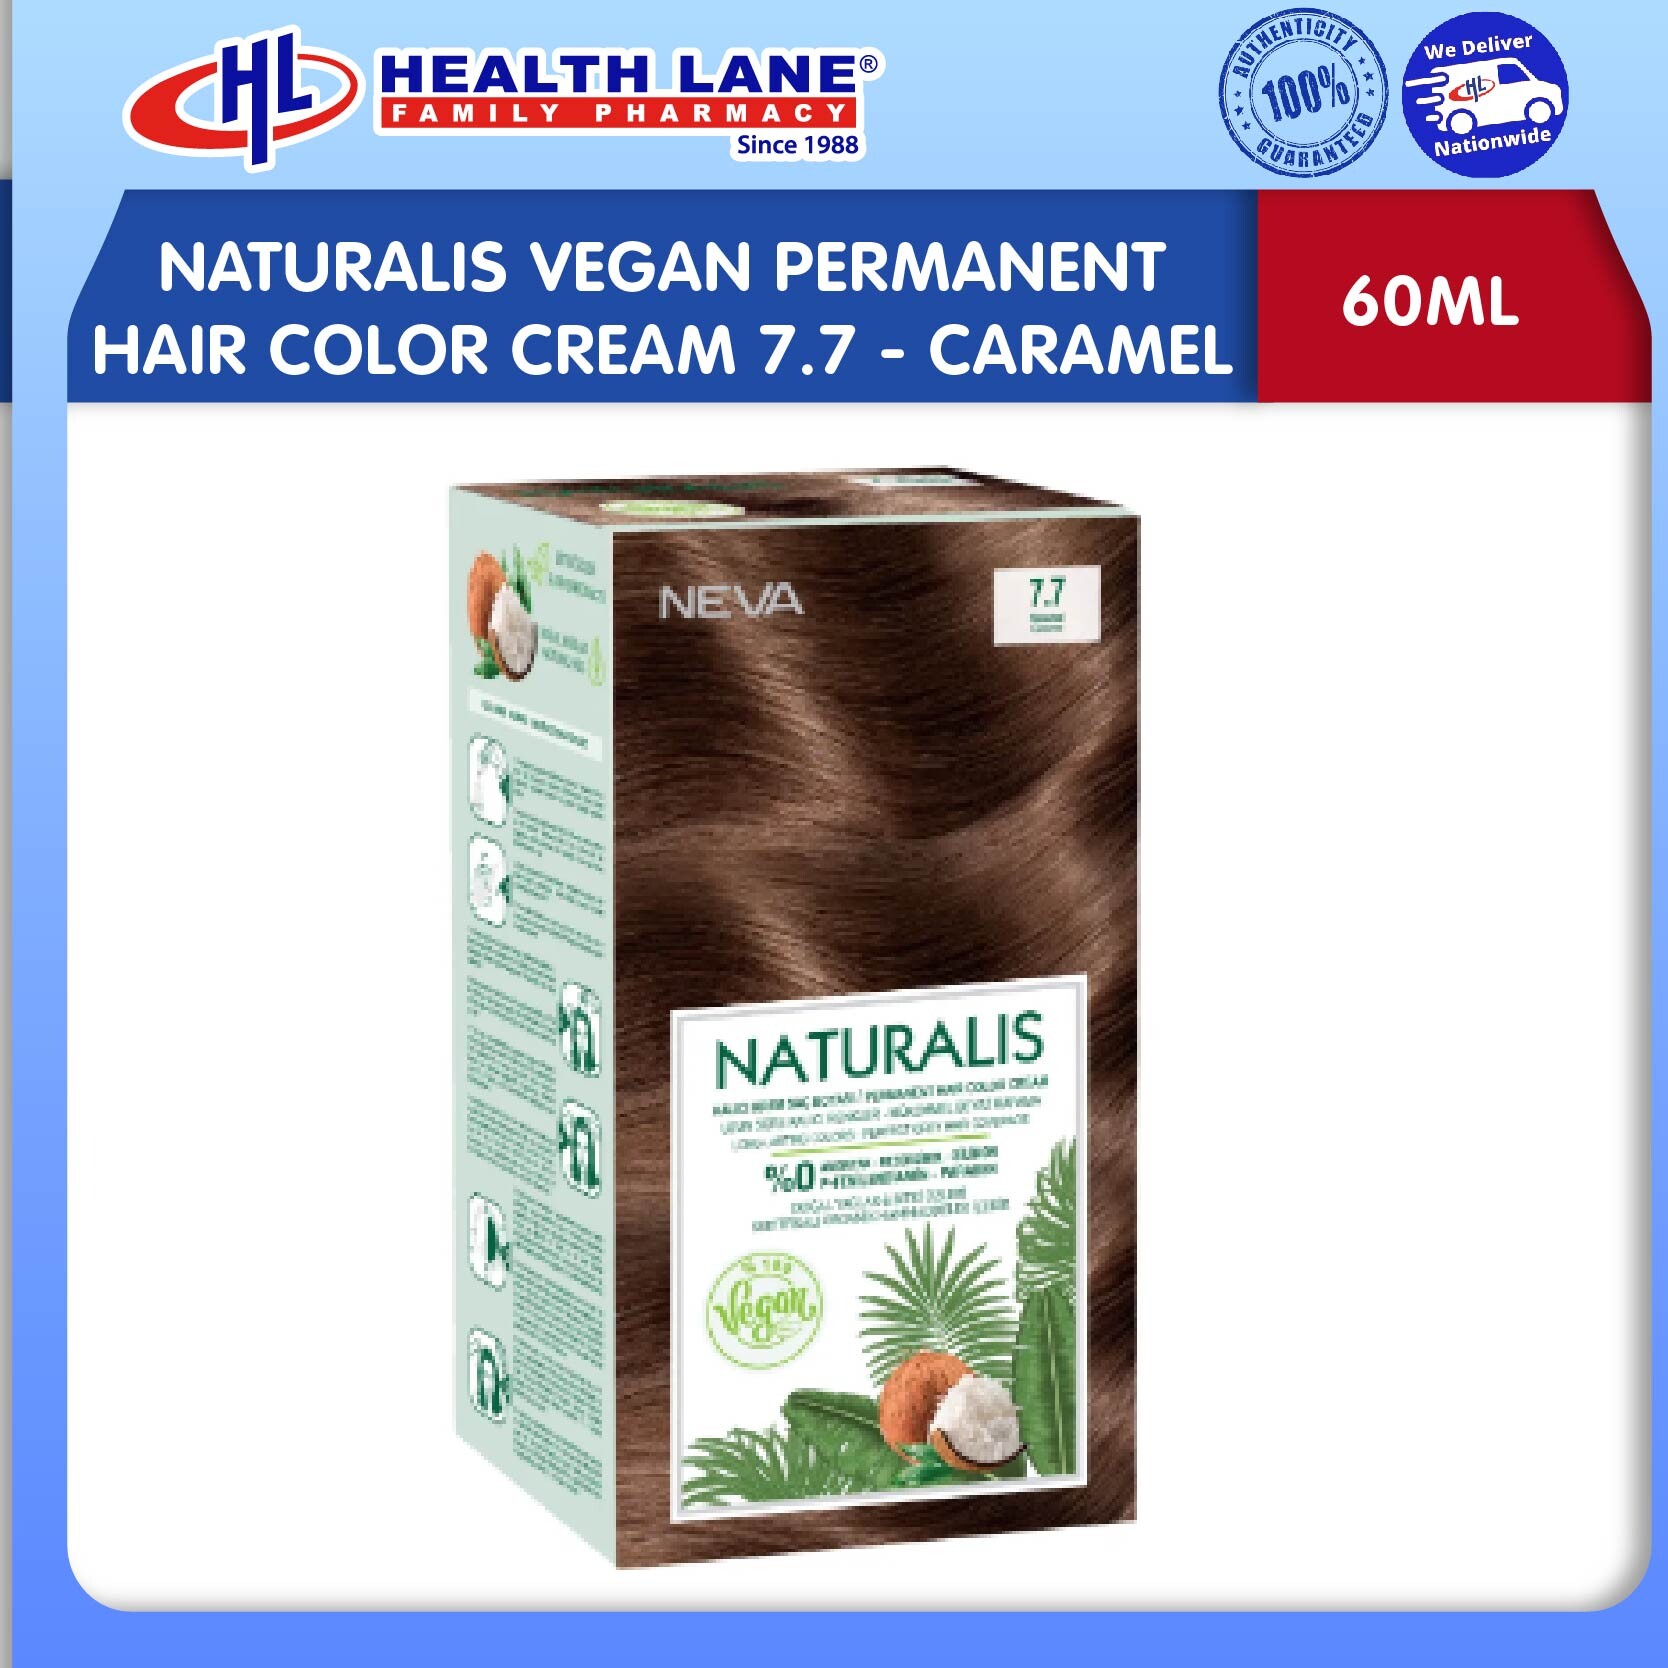 NATURALIS VEGAN PERMANENT HAIR COLOR CREAM 7.7 - CARAMEL (60ML)